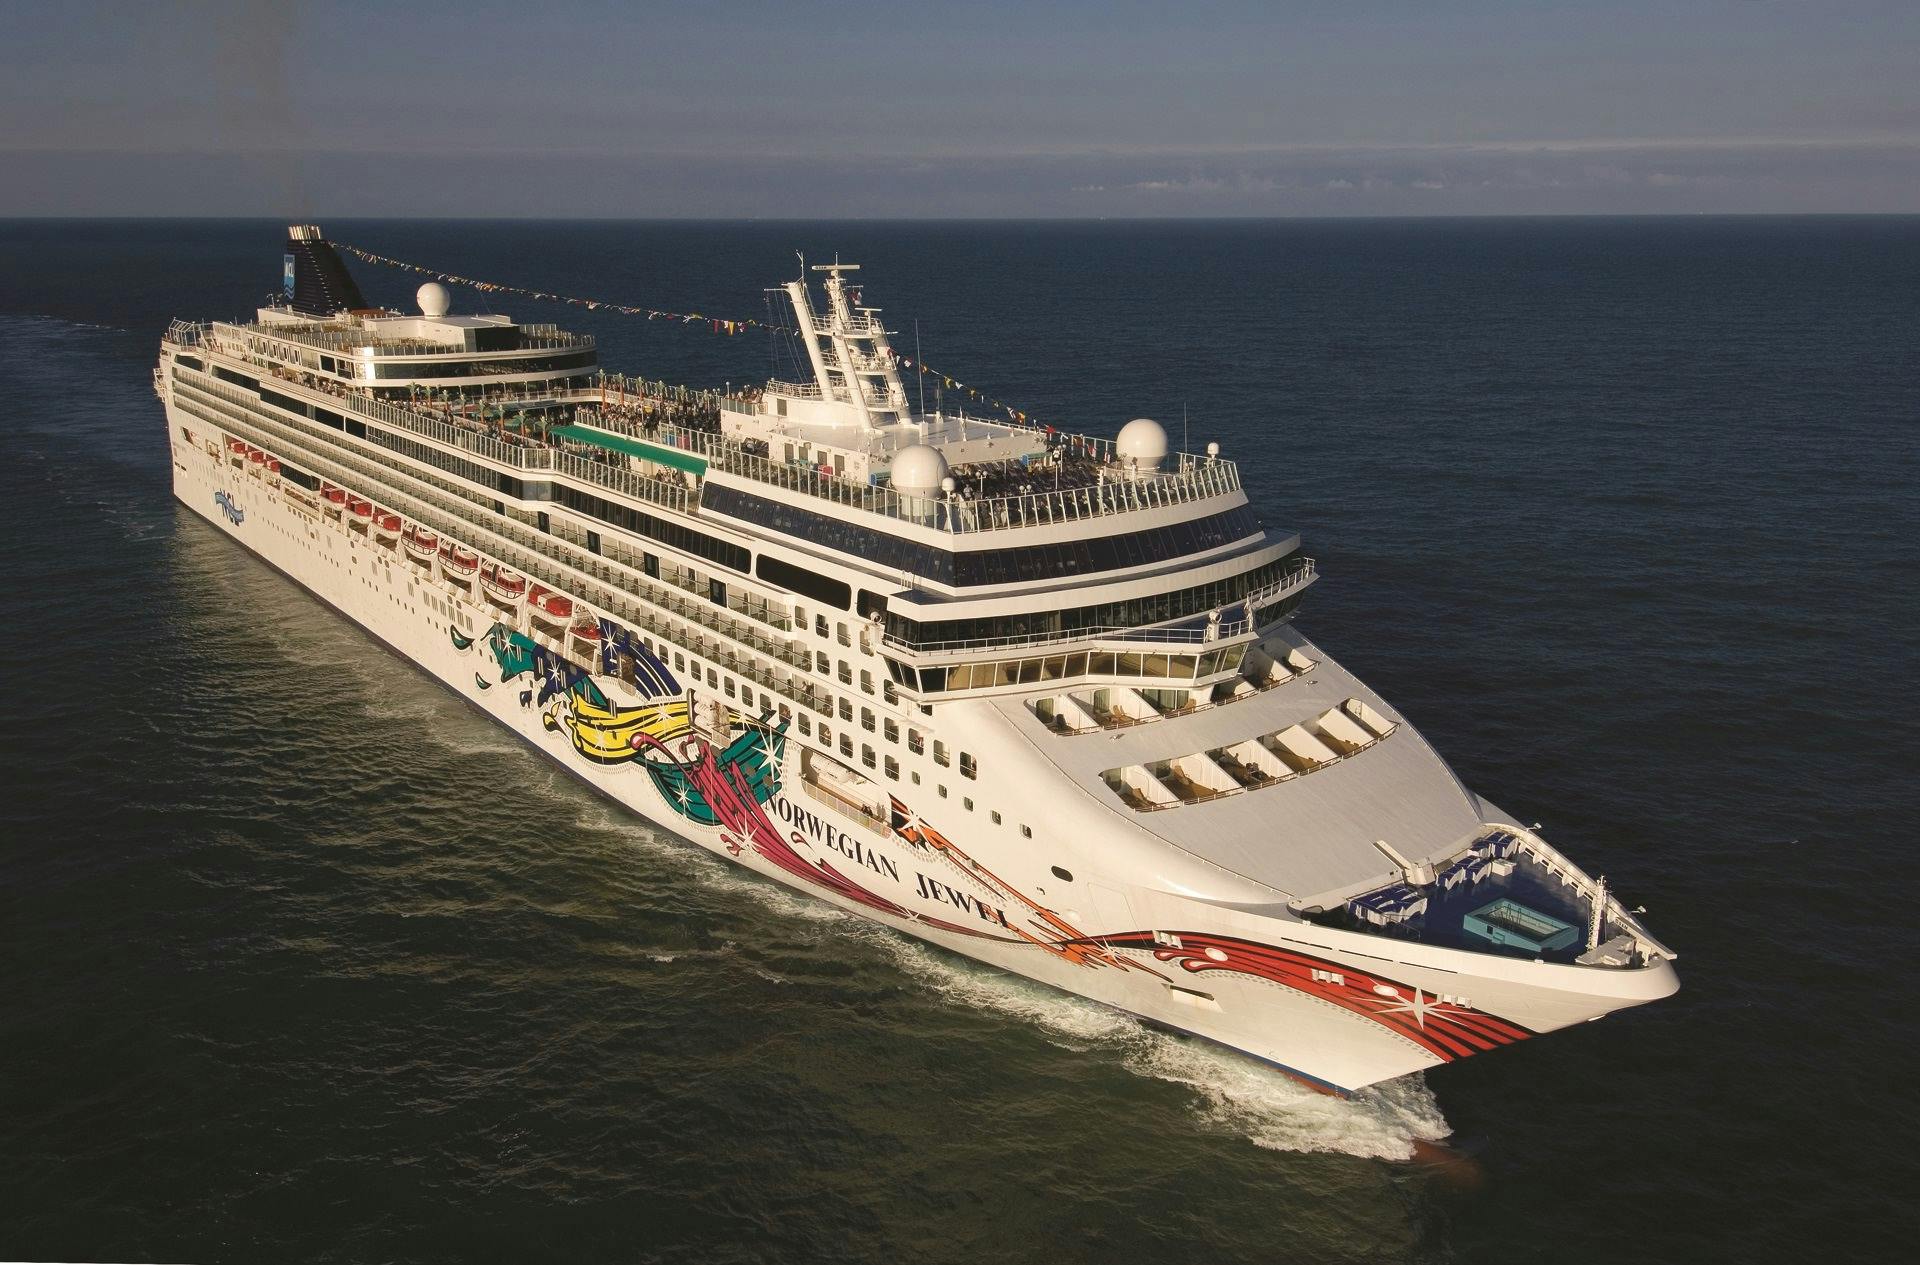 Norwegian Jewel - Norwegian Cruise Line - Norwegian Jewel